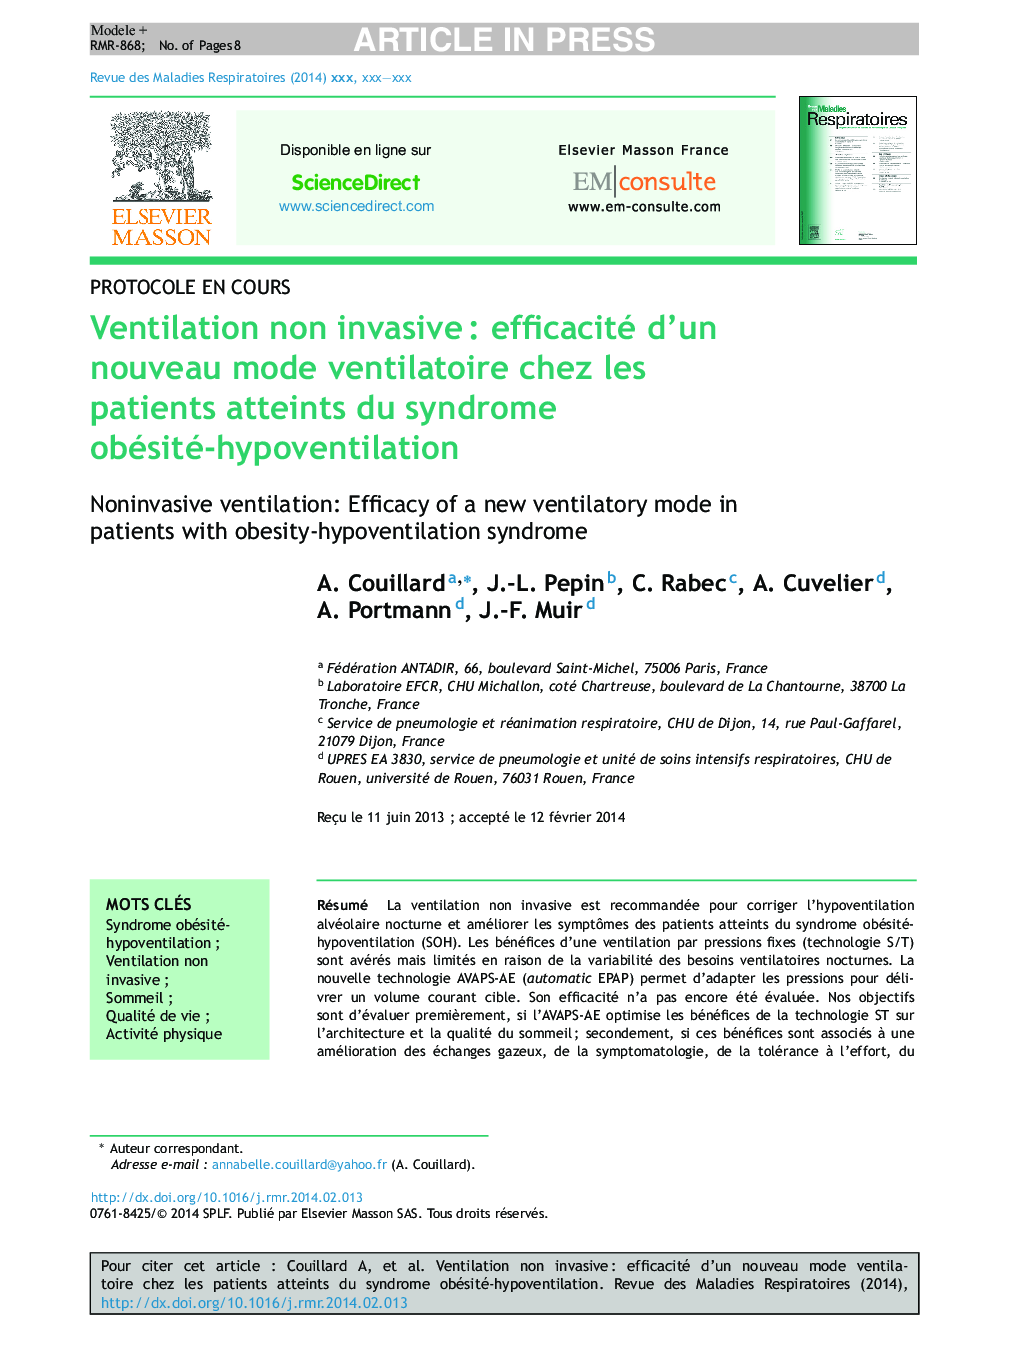 Ventilation non invasiveÂ : efficacité d'un nouveau mode ventilatoire chez les patients atteints du syndrome obésité-hypoventilation